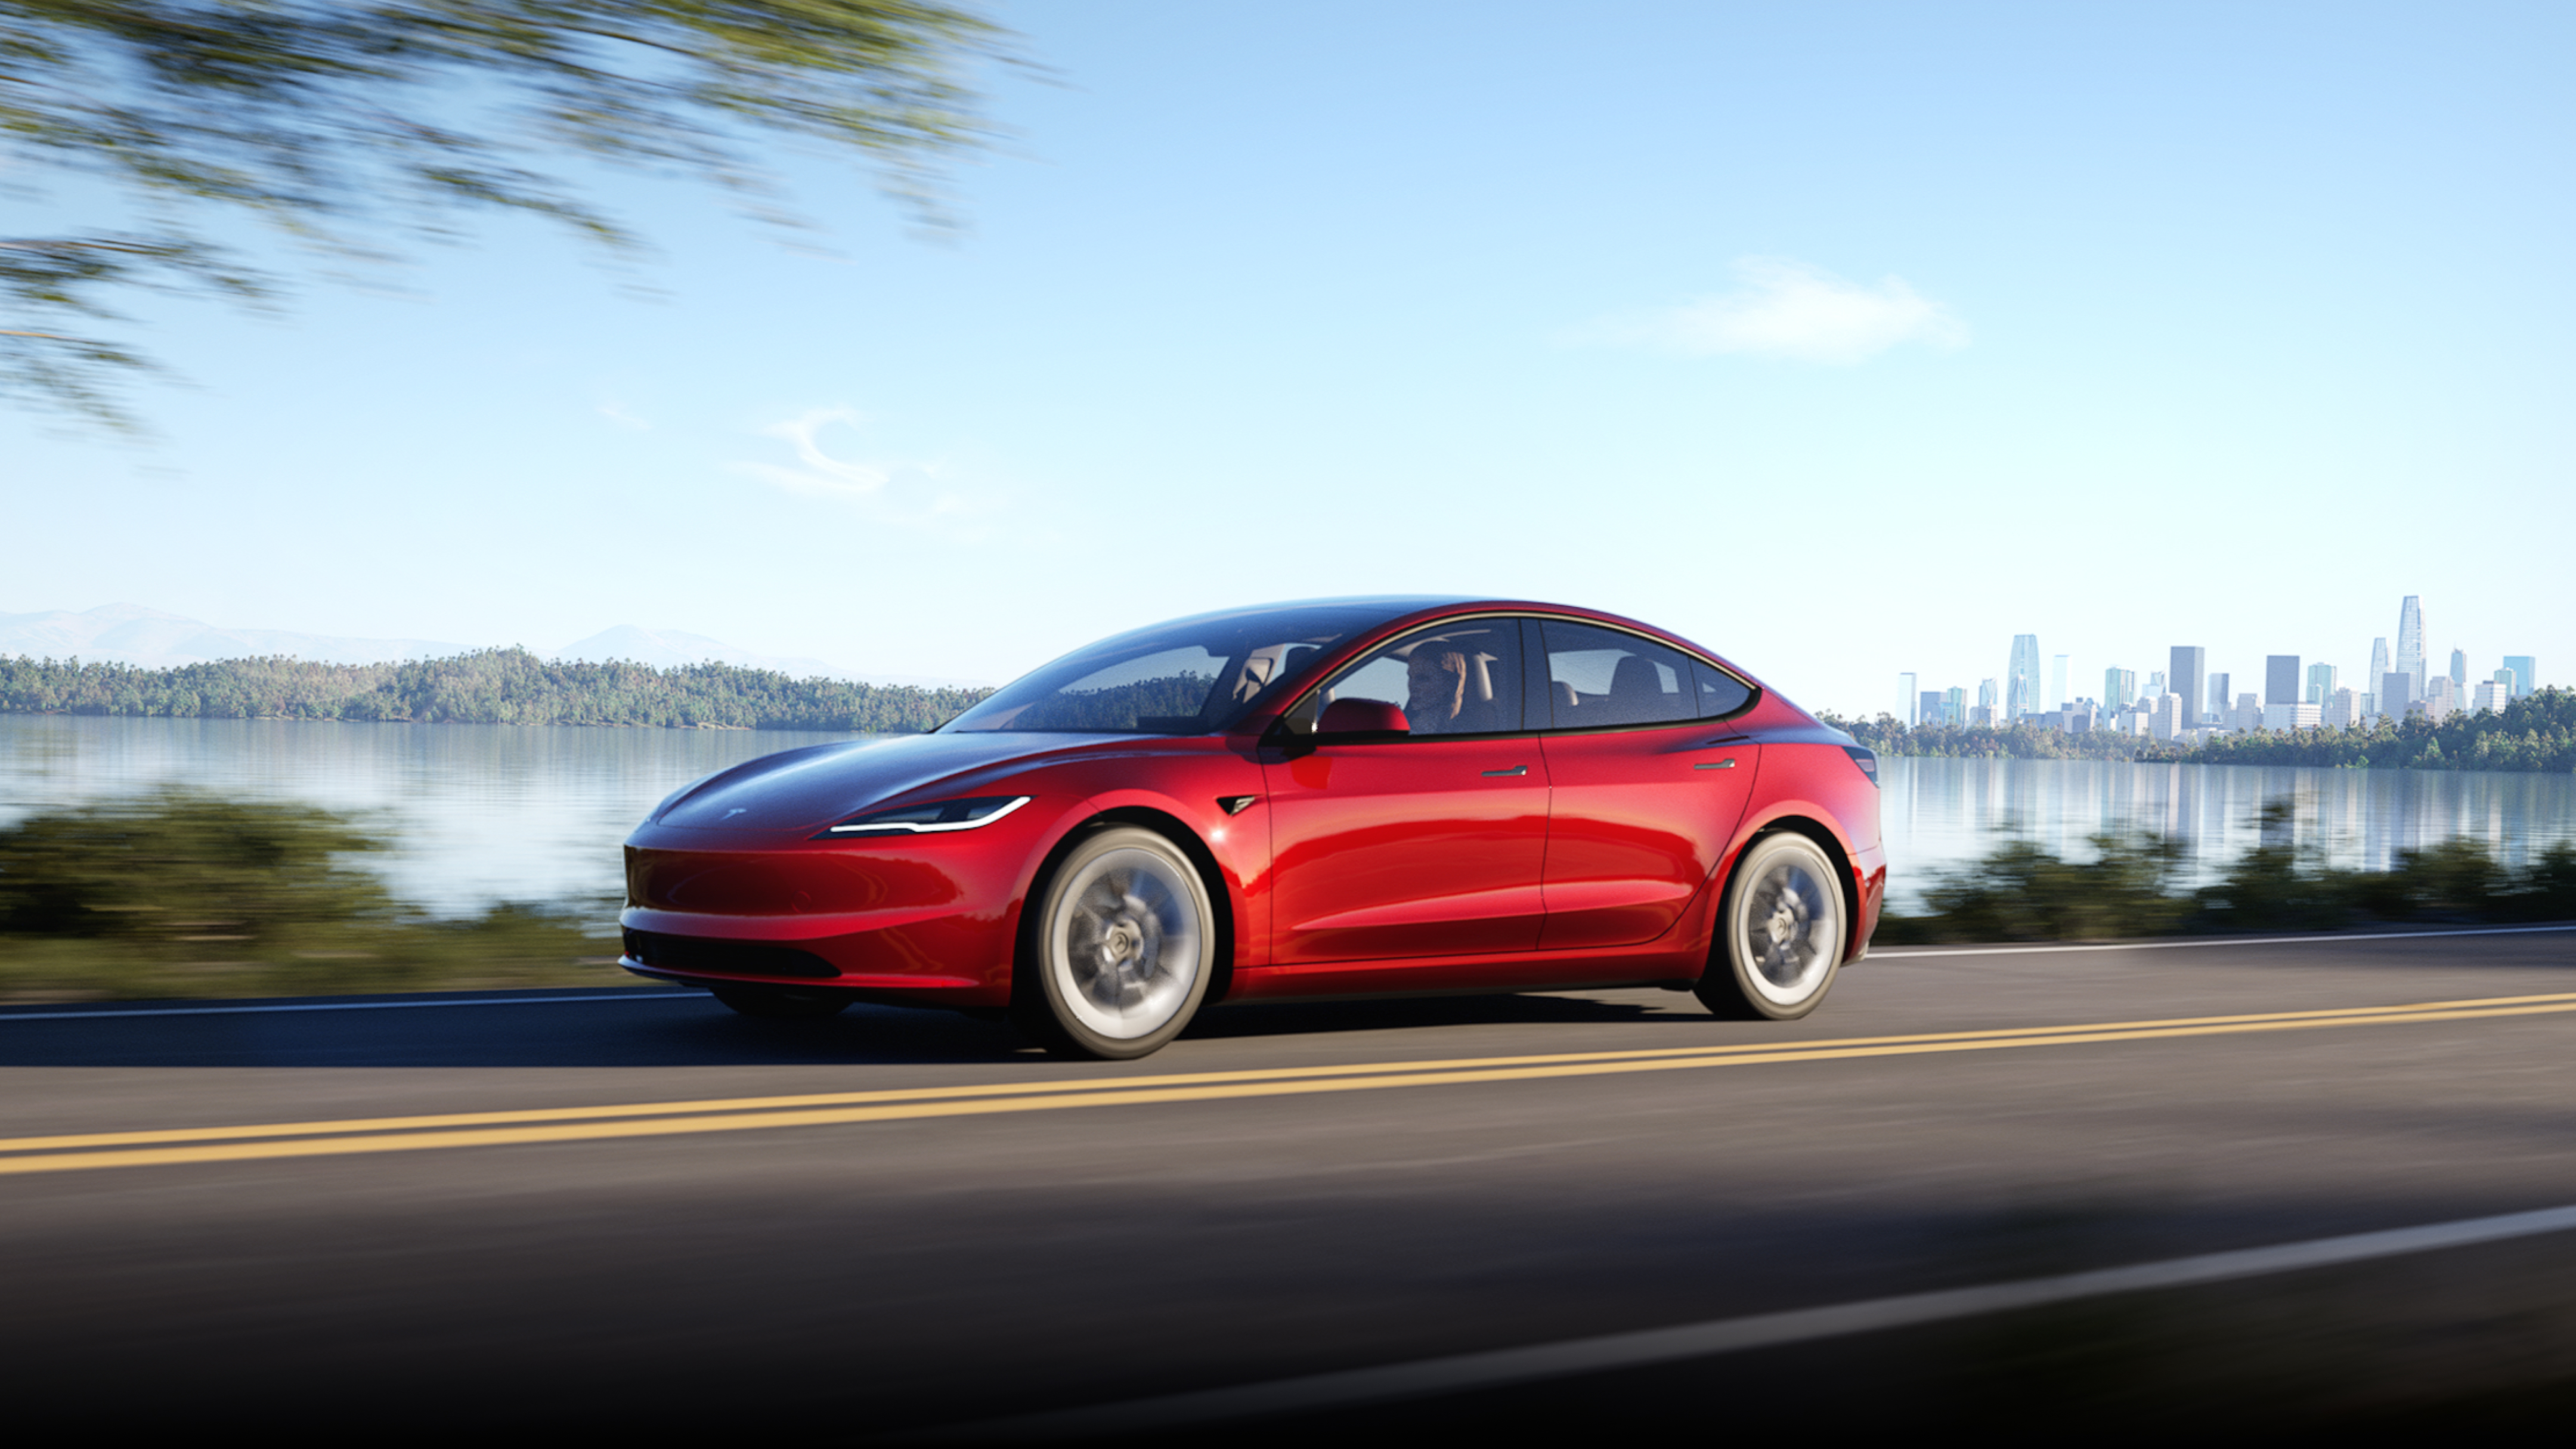 Ultra Red színű Model 3 halad egy úton, a háttérben egy város látképével.